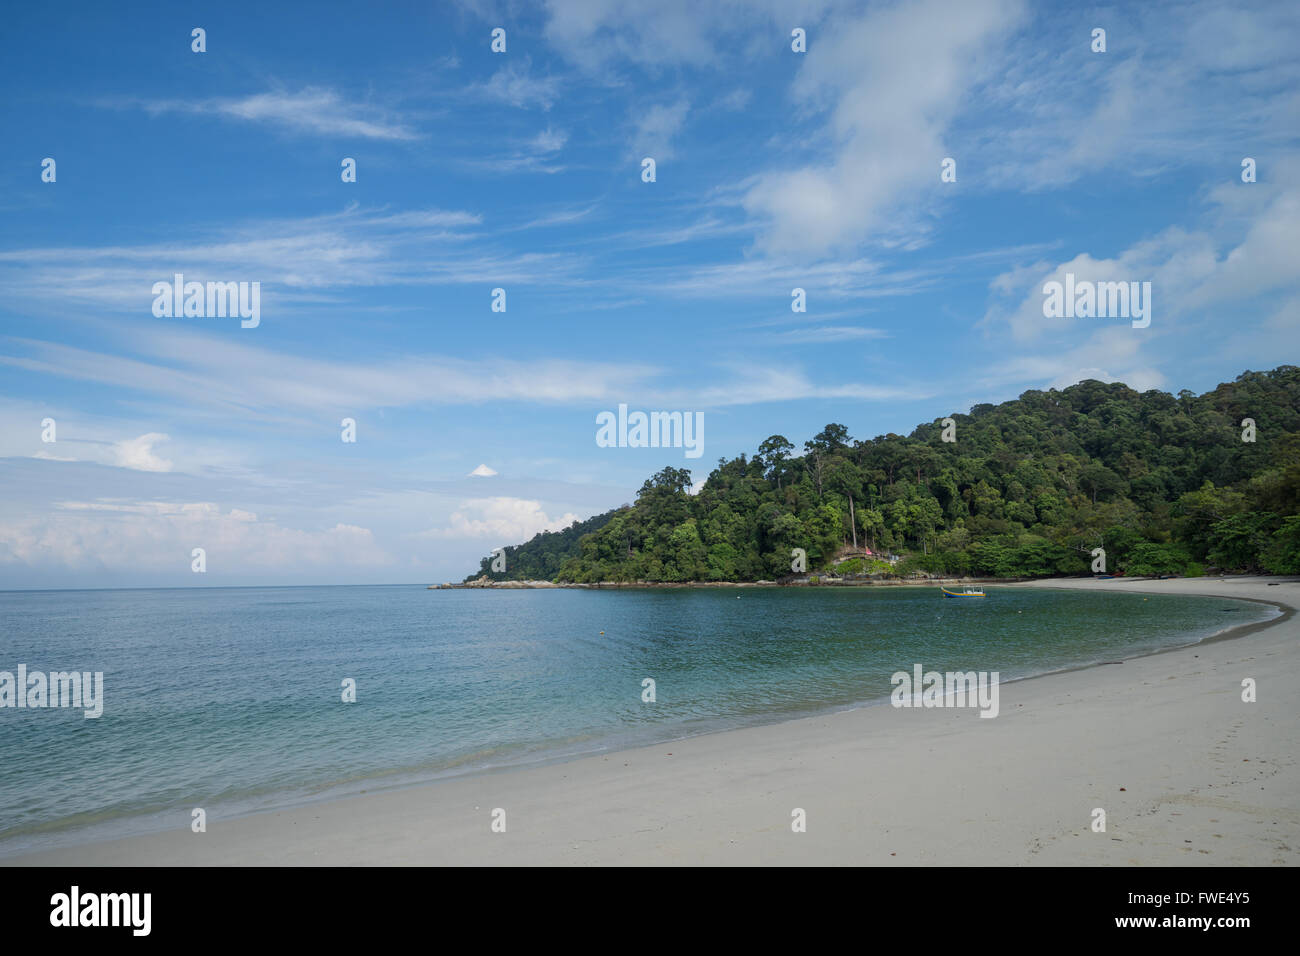 View of Teluk Nipah beach in Pangkor island, Malaysia. Stock Photo